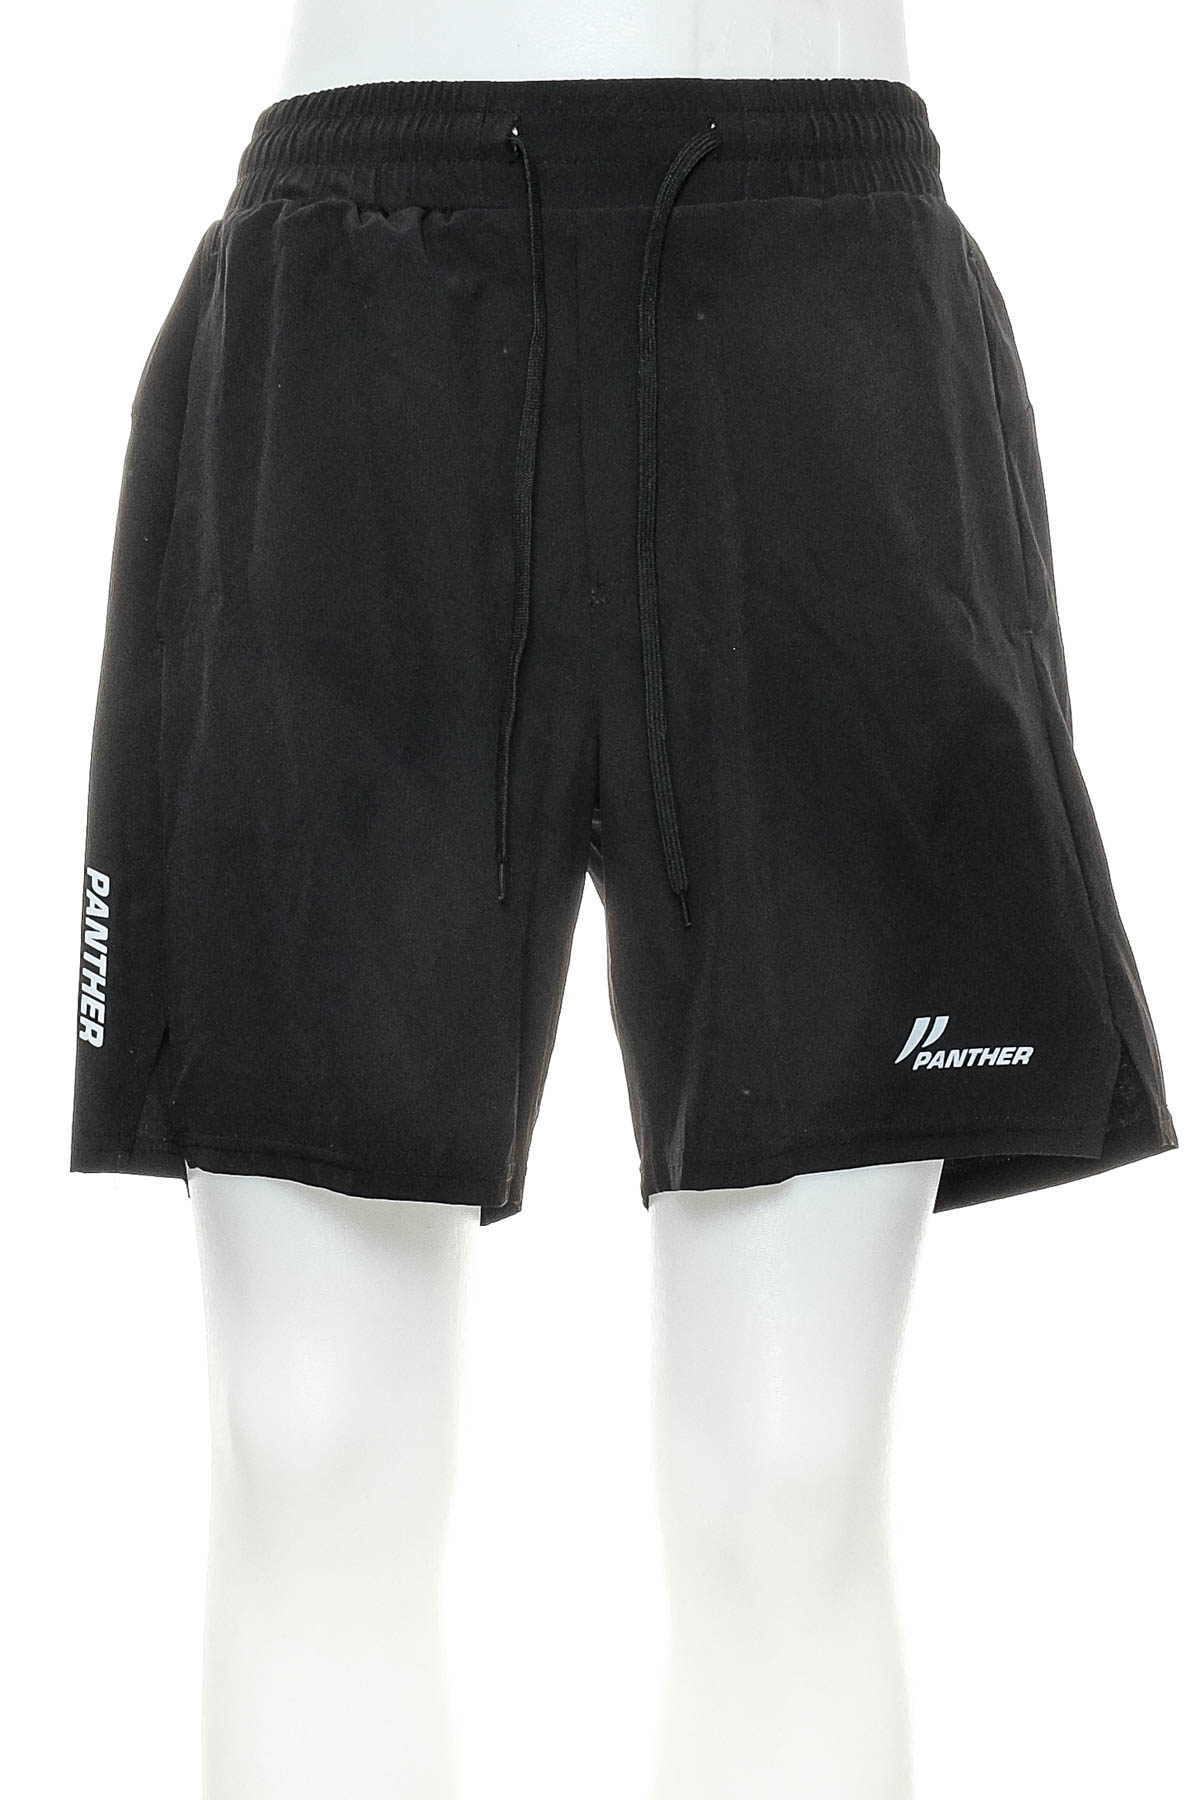 Men's shorts - PANTHER - 0